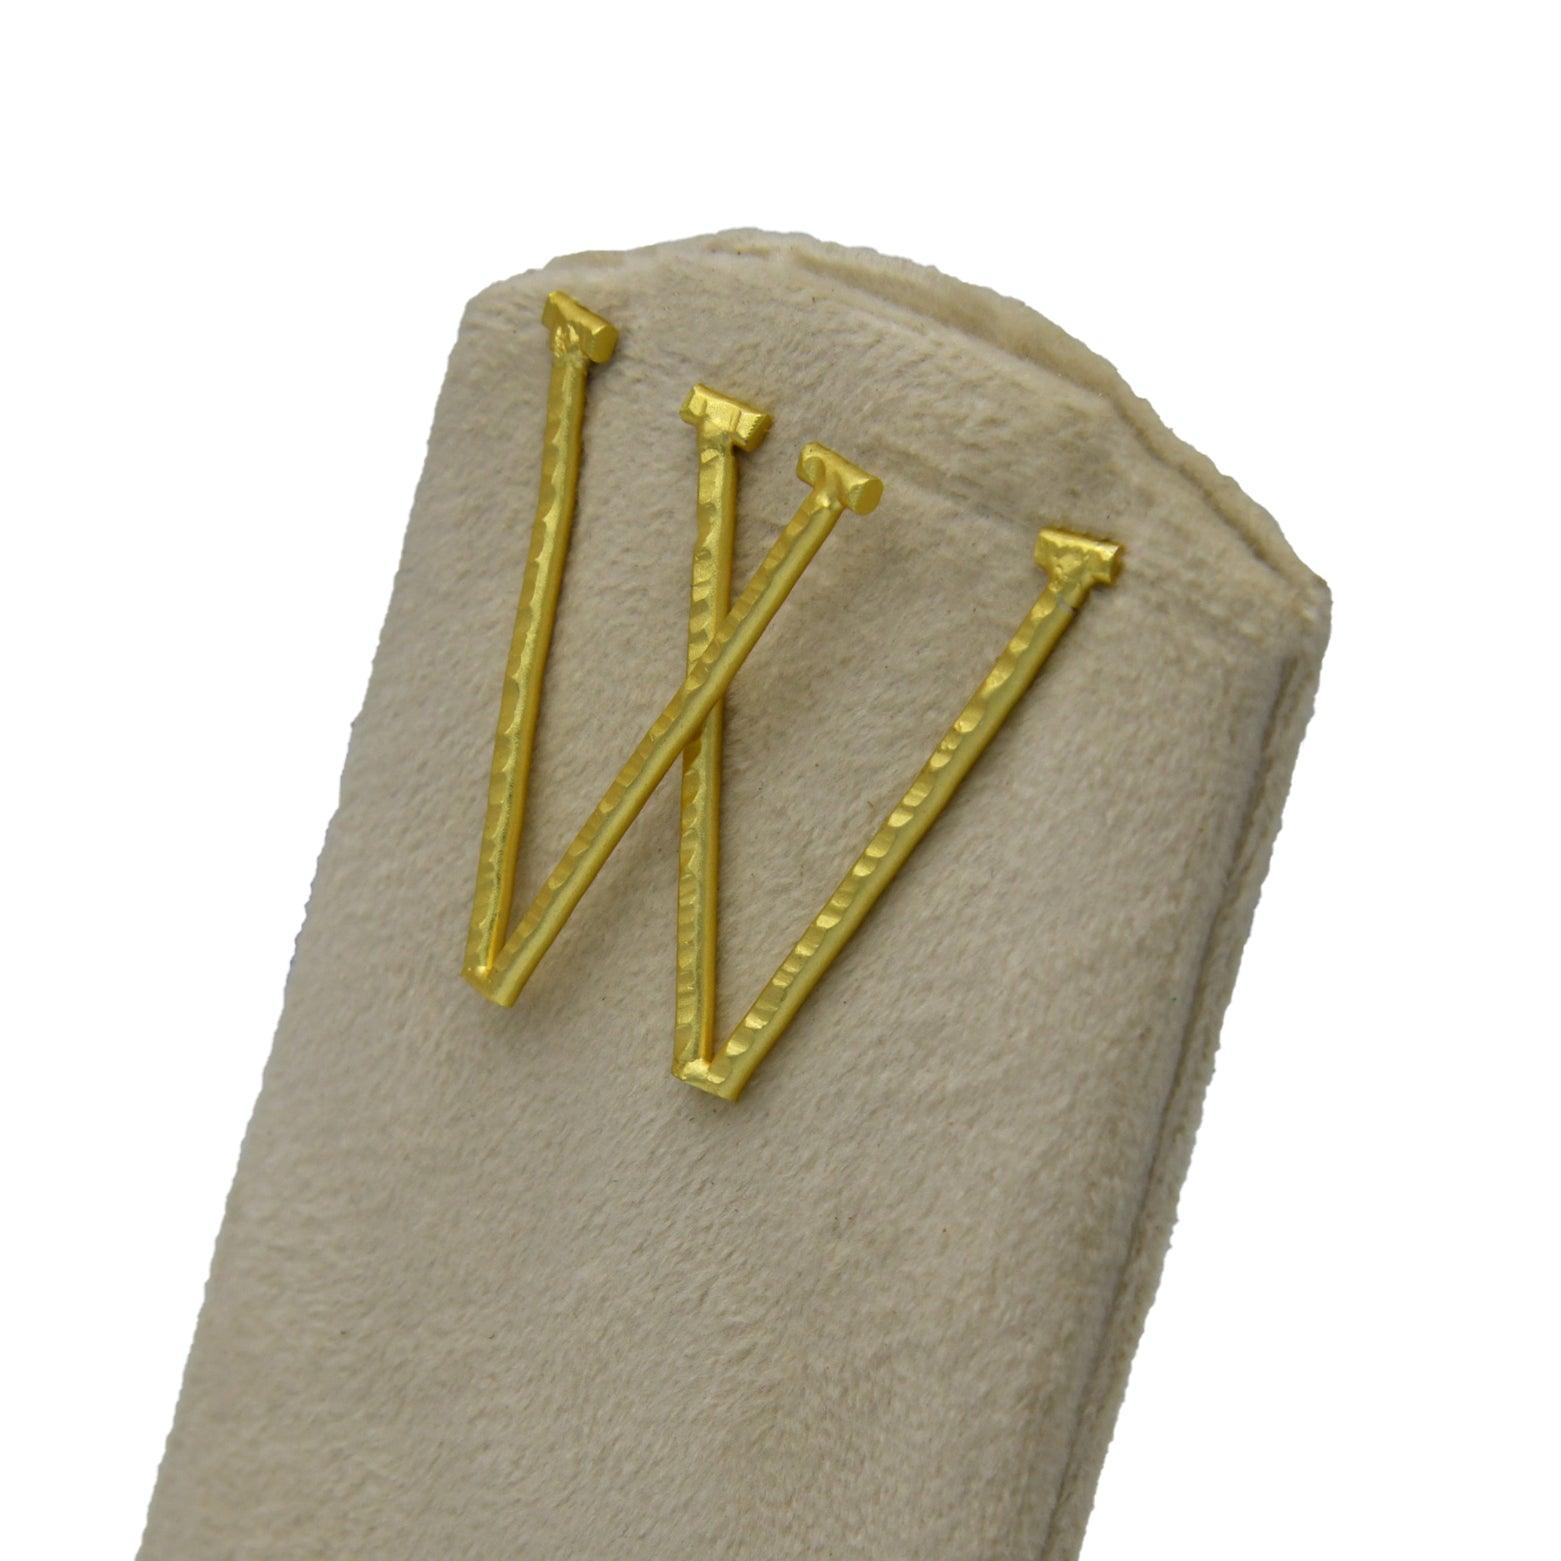 English Alphabet "V" Brass Earring - DeKulture DKW-1359-SEJ